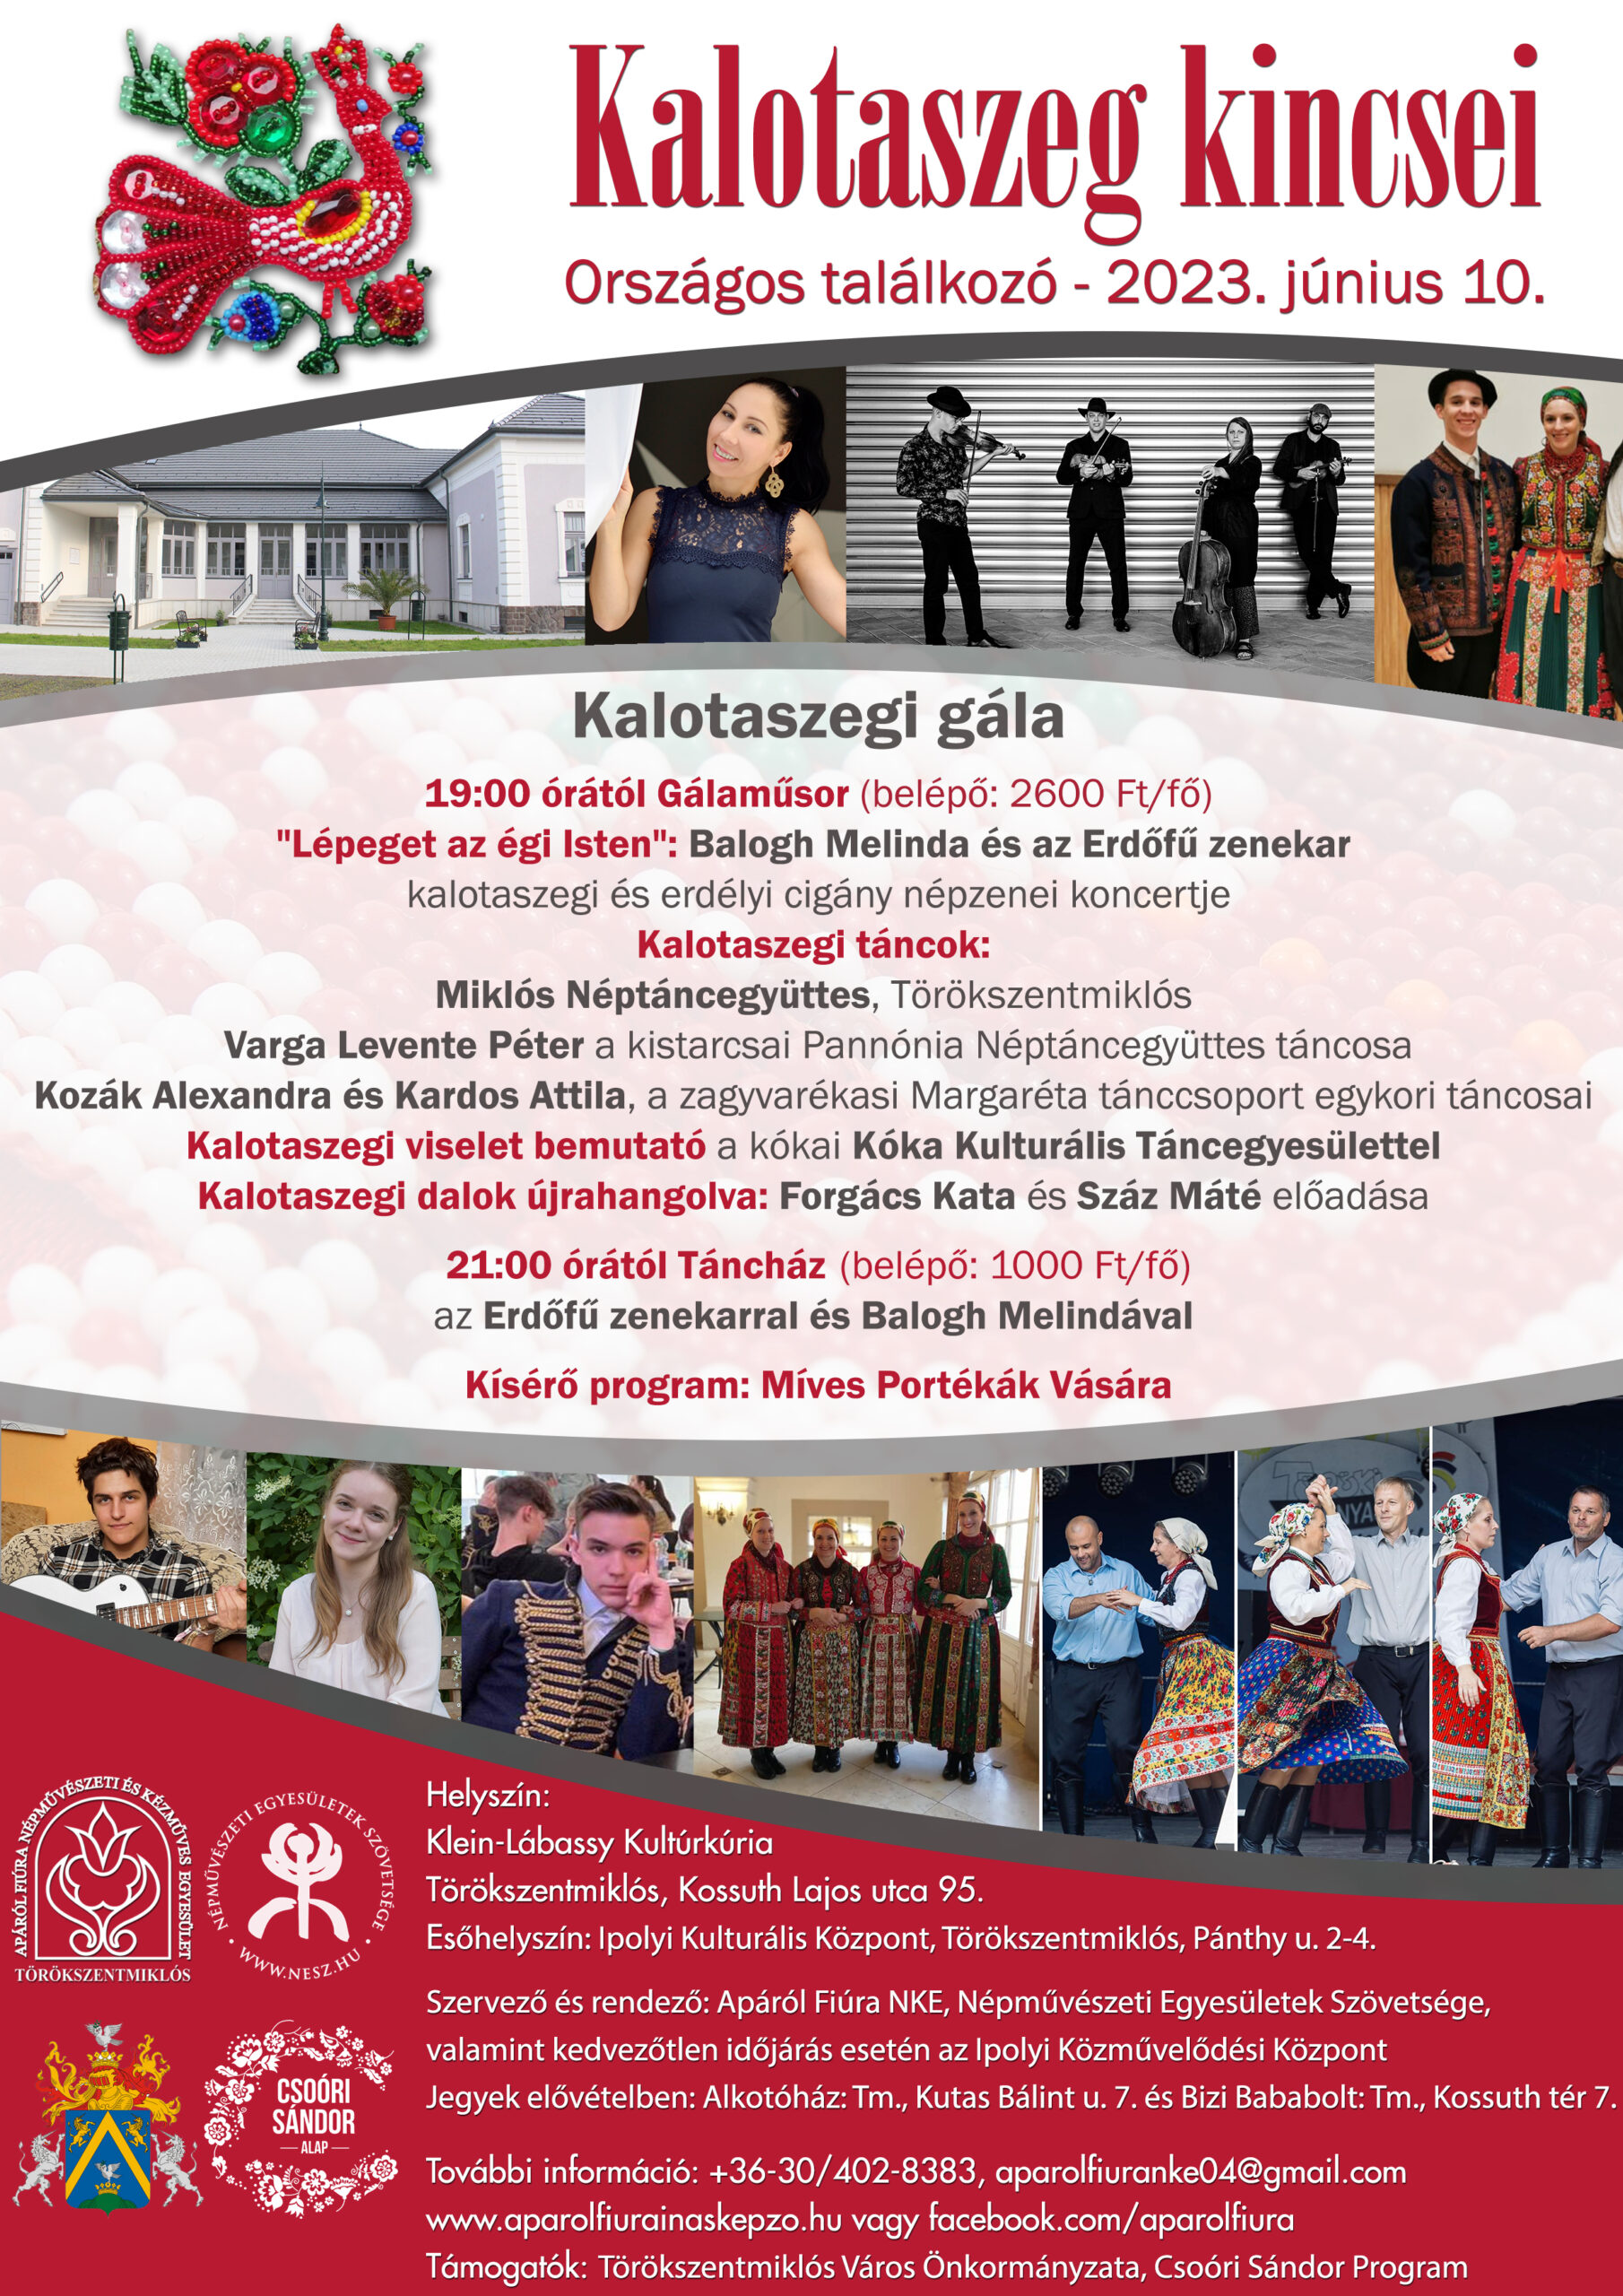 Kalotaszeg kincsei országos találkozó és Kalotaszegi Gála